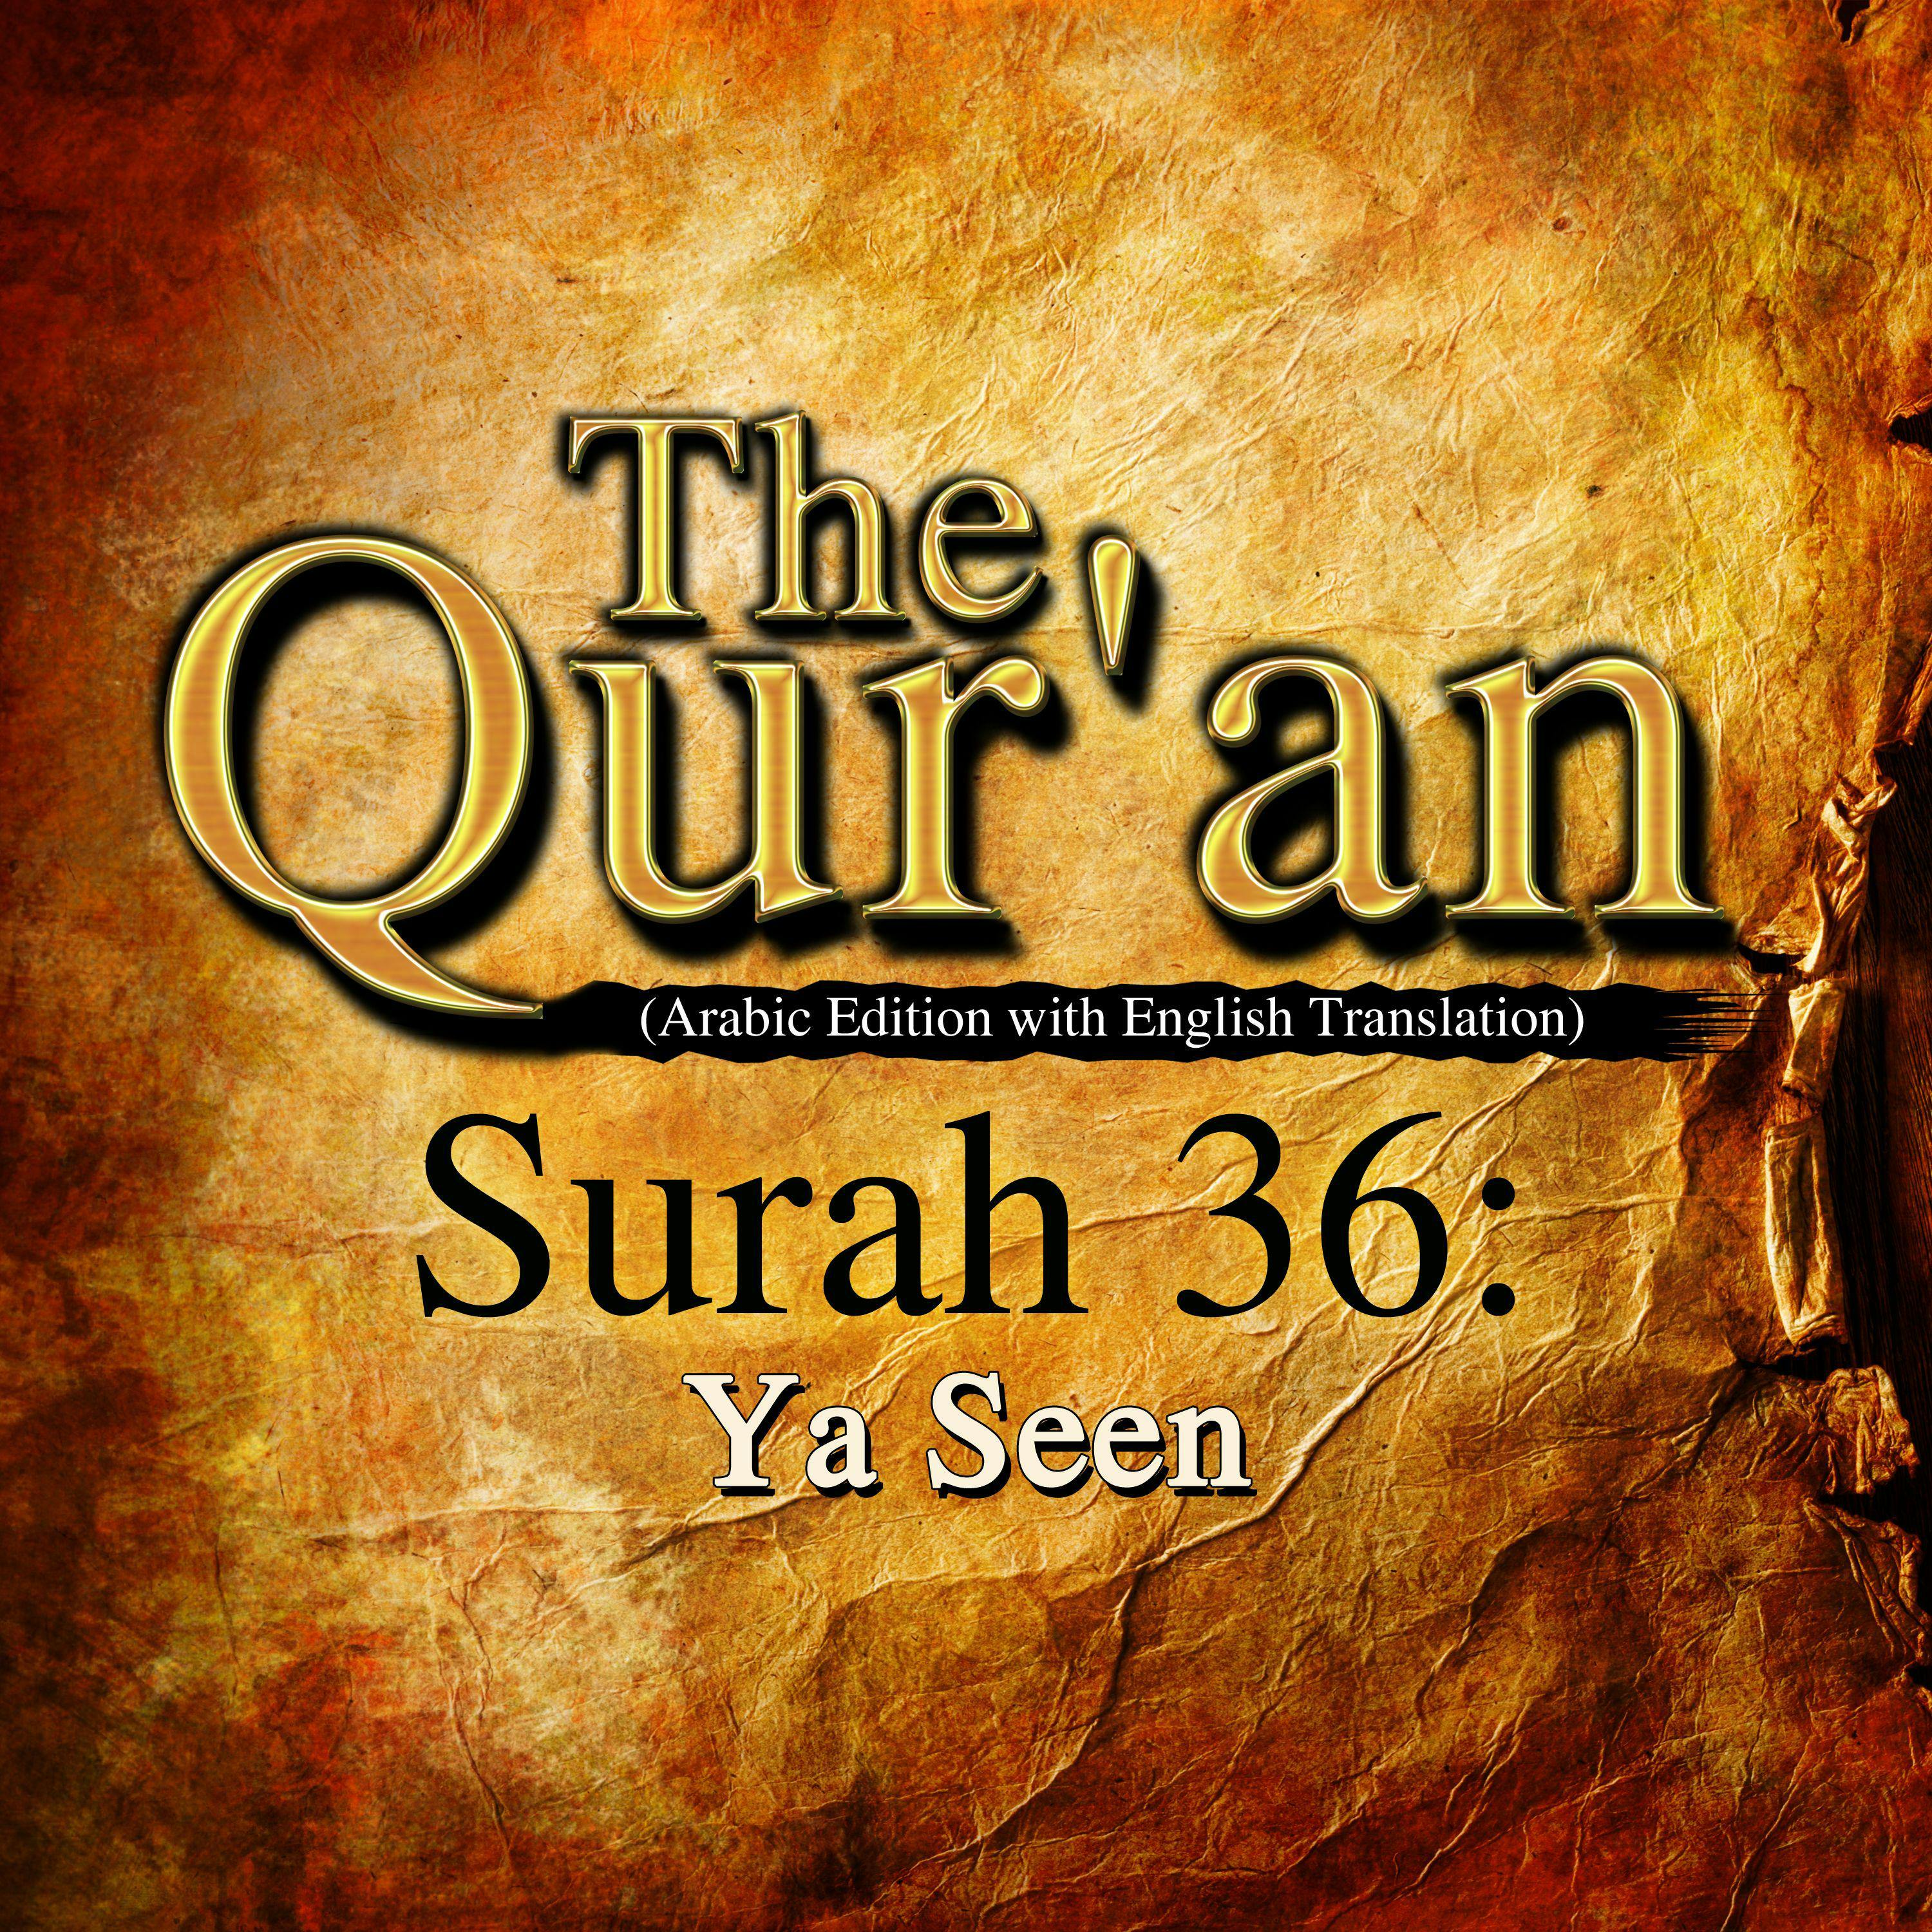 The Qur'an: Surah 36: Ya Seen - One Media iP LTD